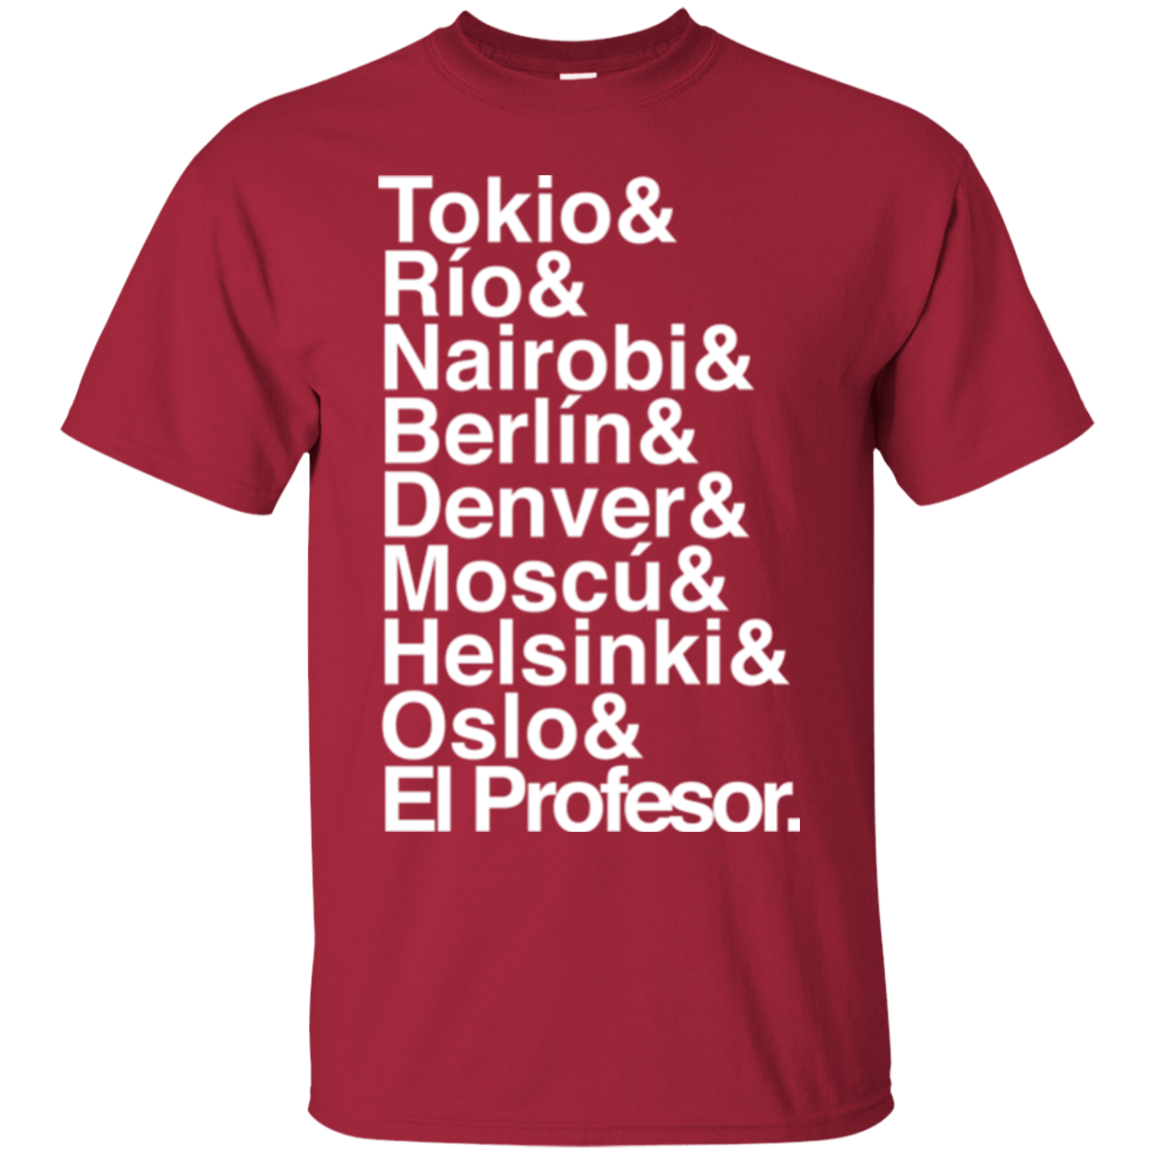 T-Shirts Cardinal / S Money Heist Jetset T-Shirt